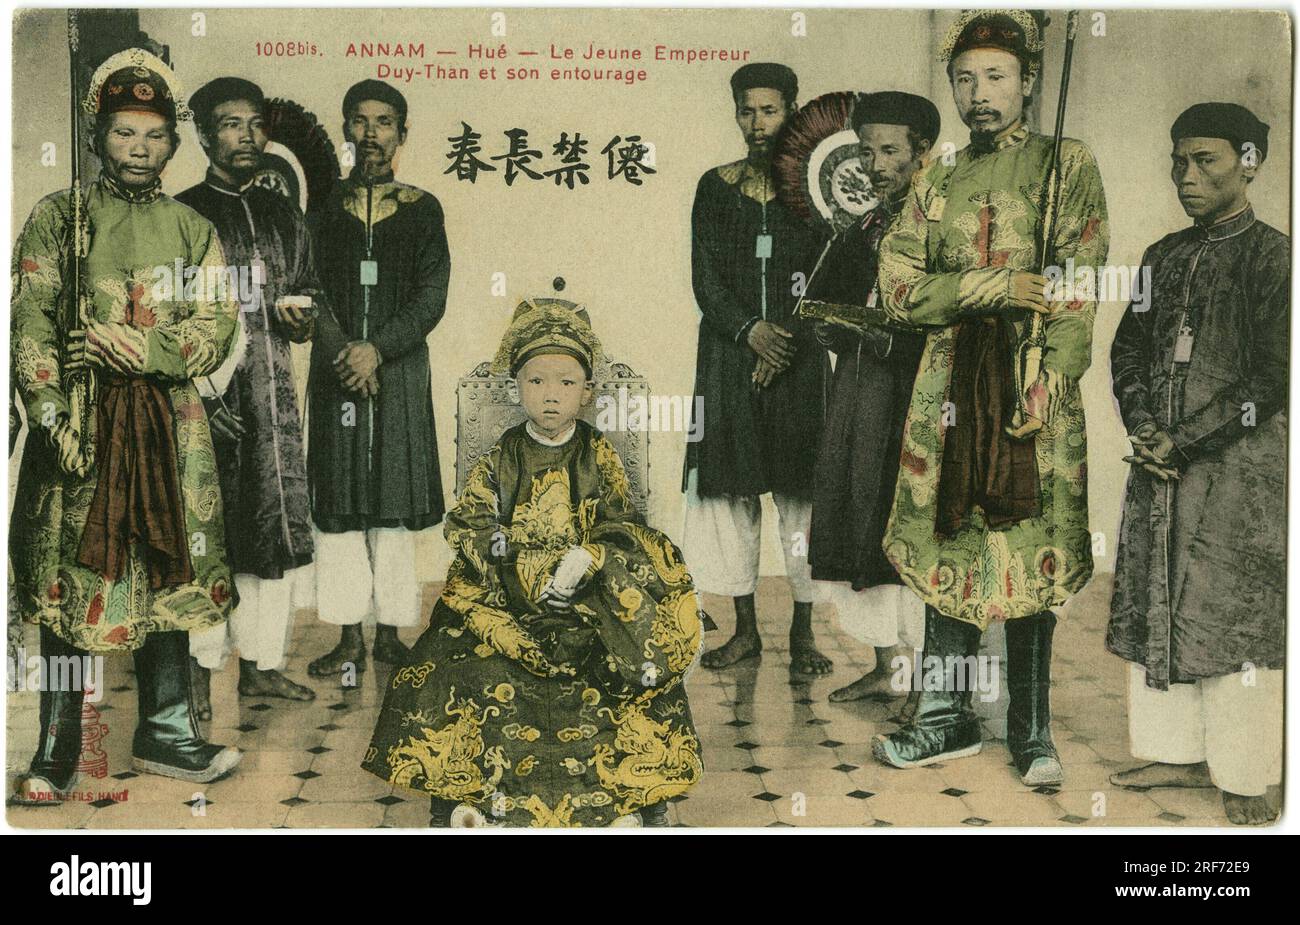 Portrait du jeune empereur Duy-Than et de son entourage a Hue dans le Annam au Vietnam, en Indochine Francaise. Carte postale, 1908, Paris. Stock Photo